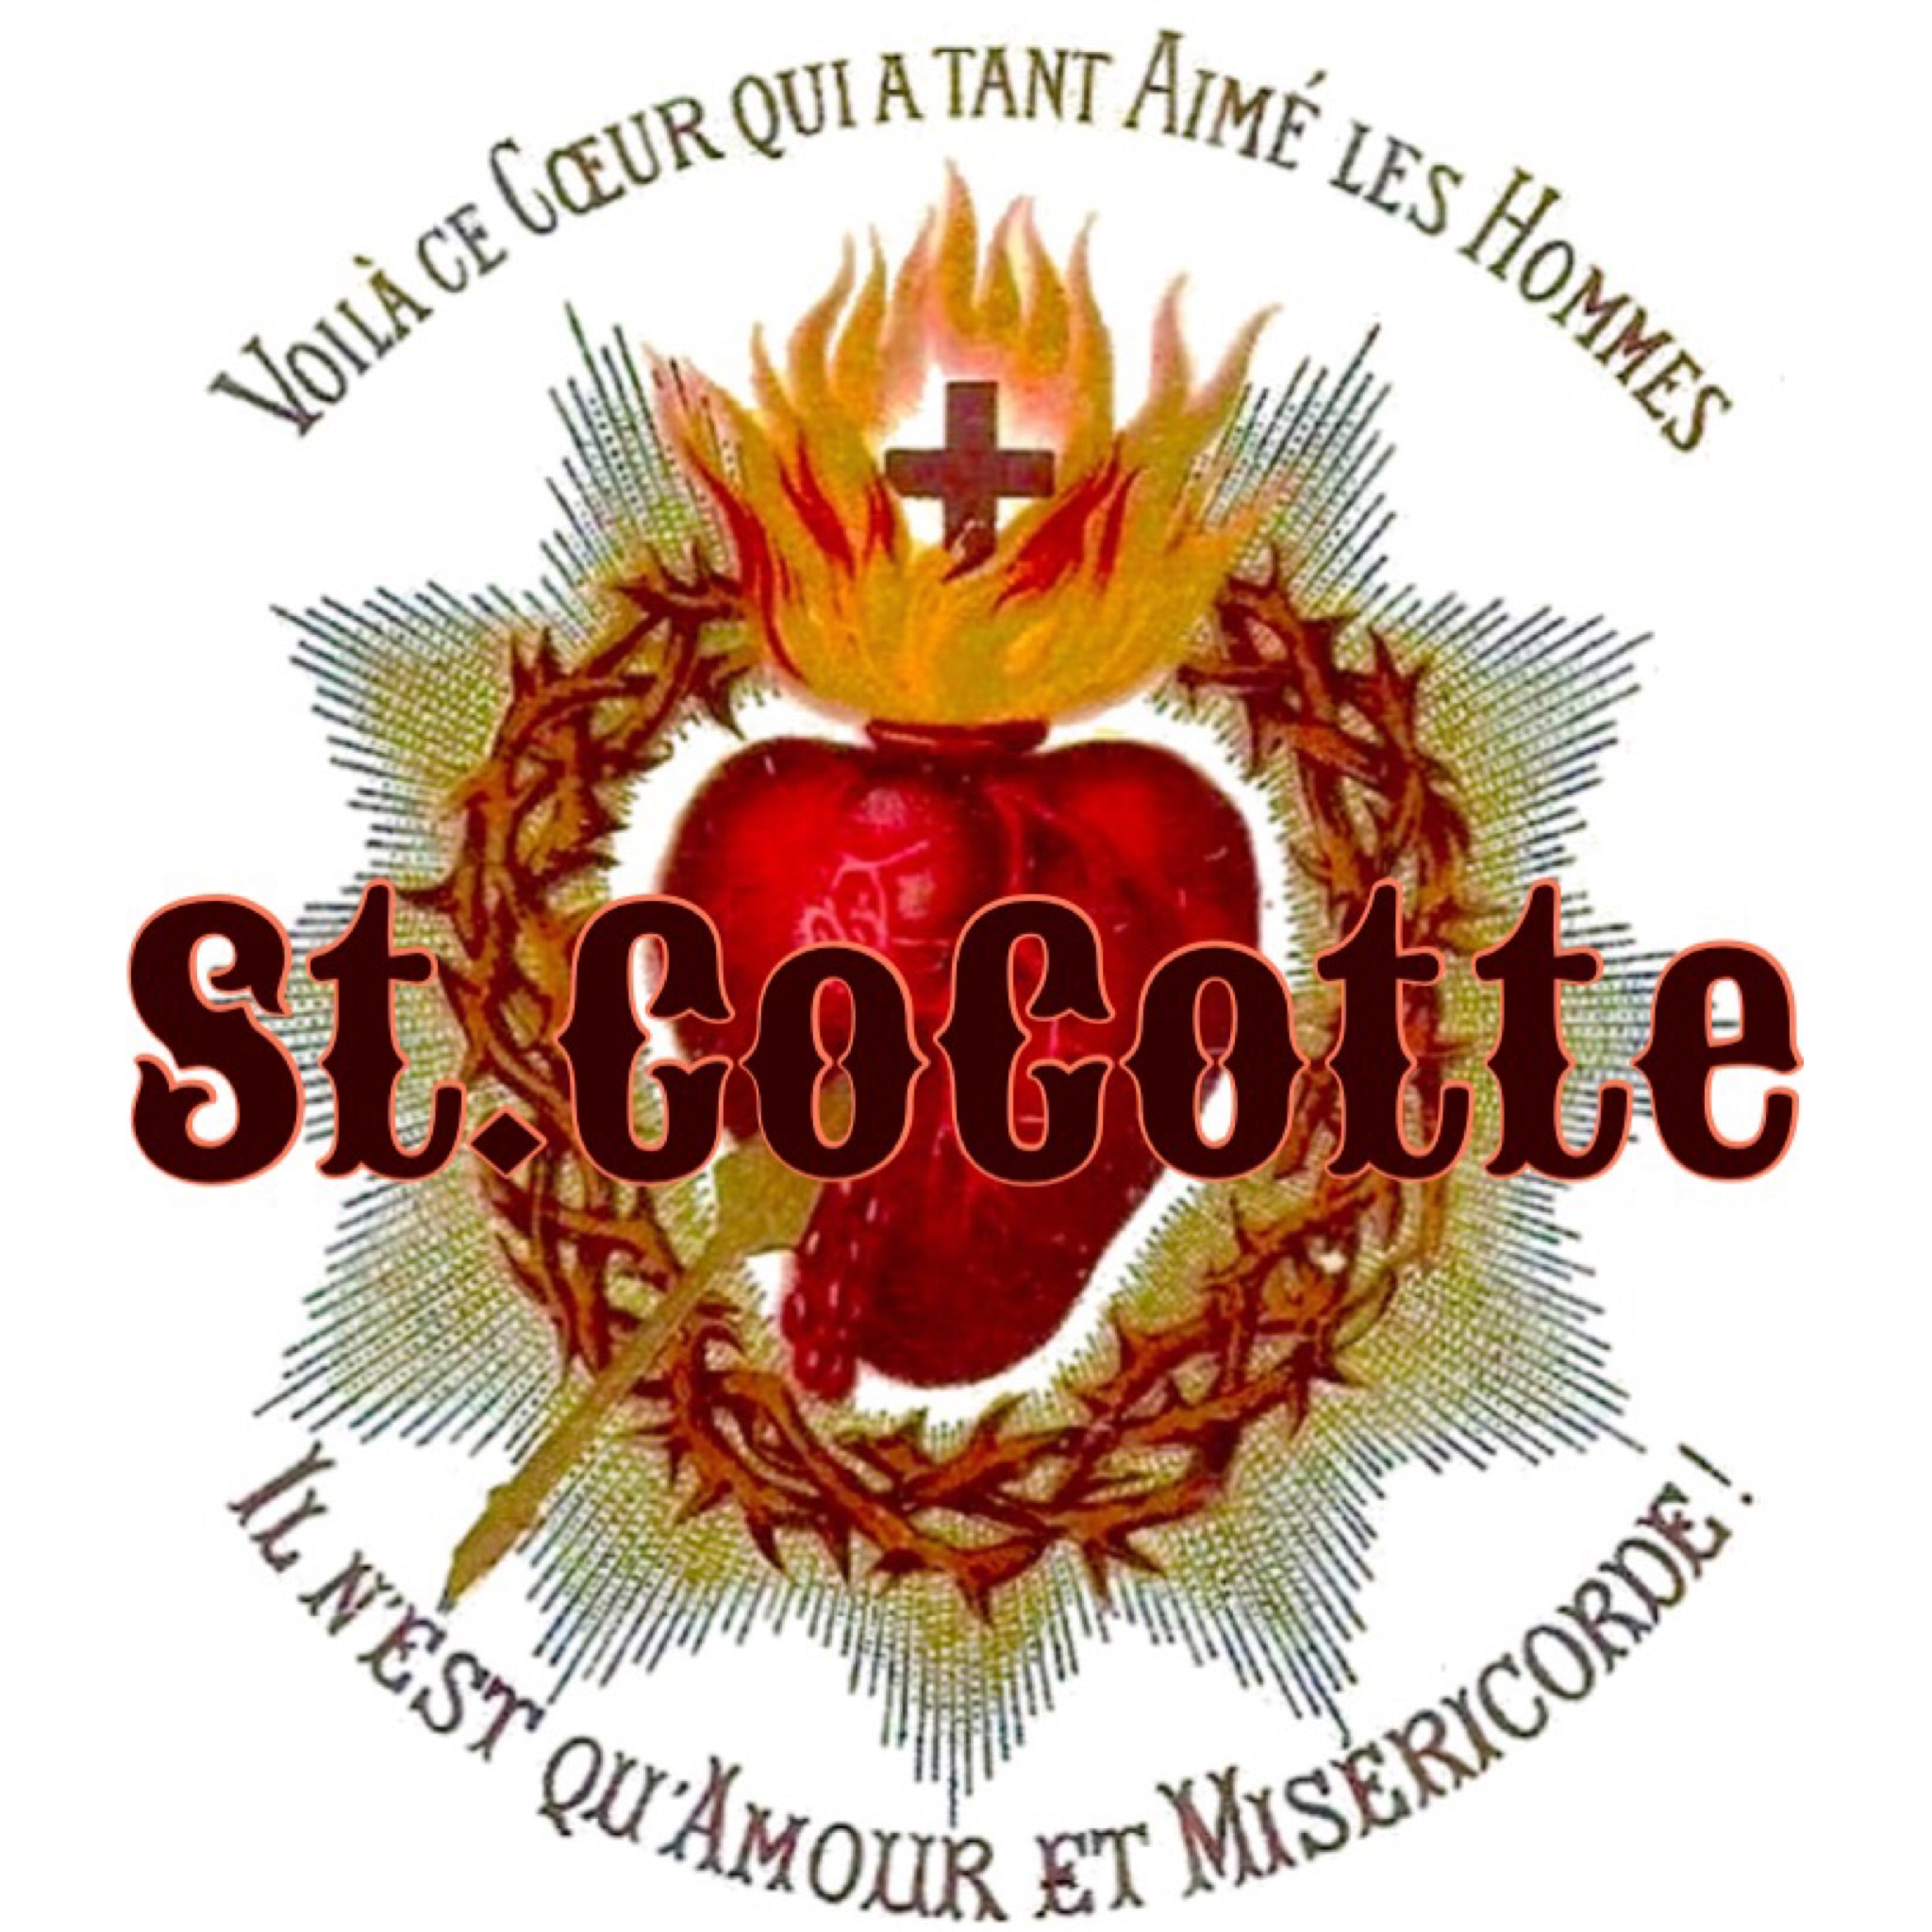 ⋆✻ St.CoCotte ✻⋆